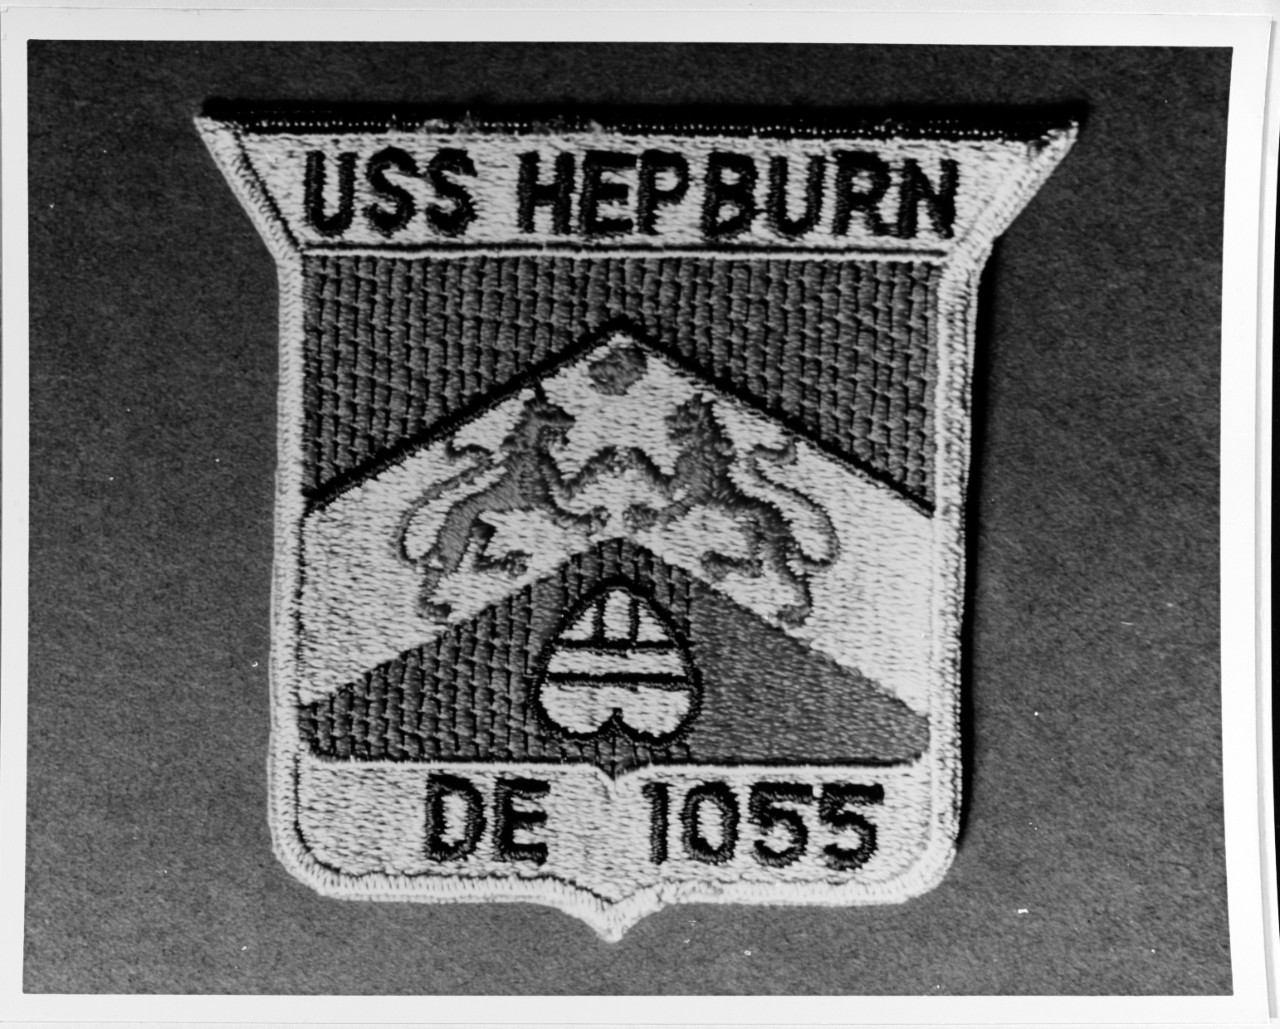 Insignia:  USS HEPBURN (DE-1055)